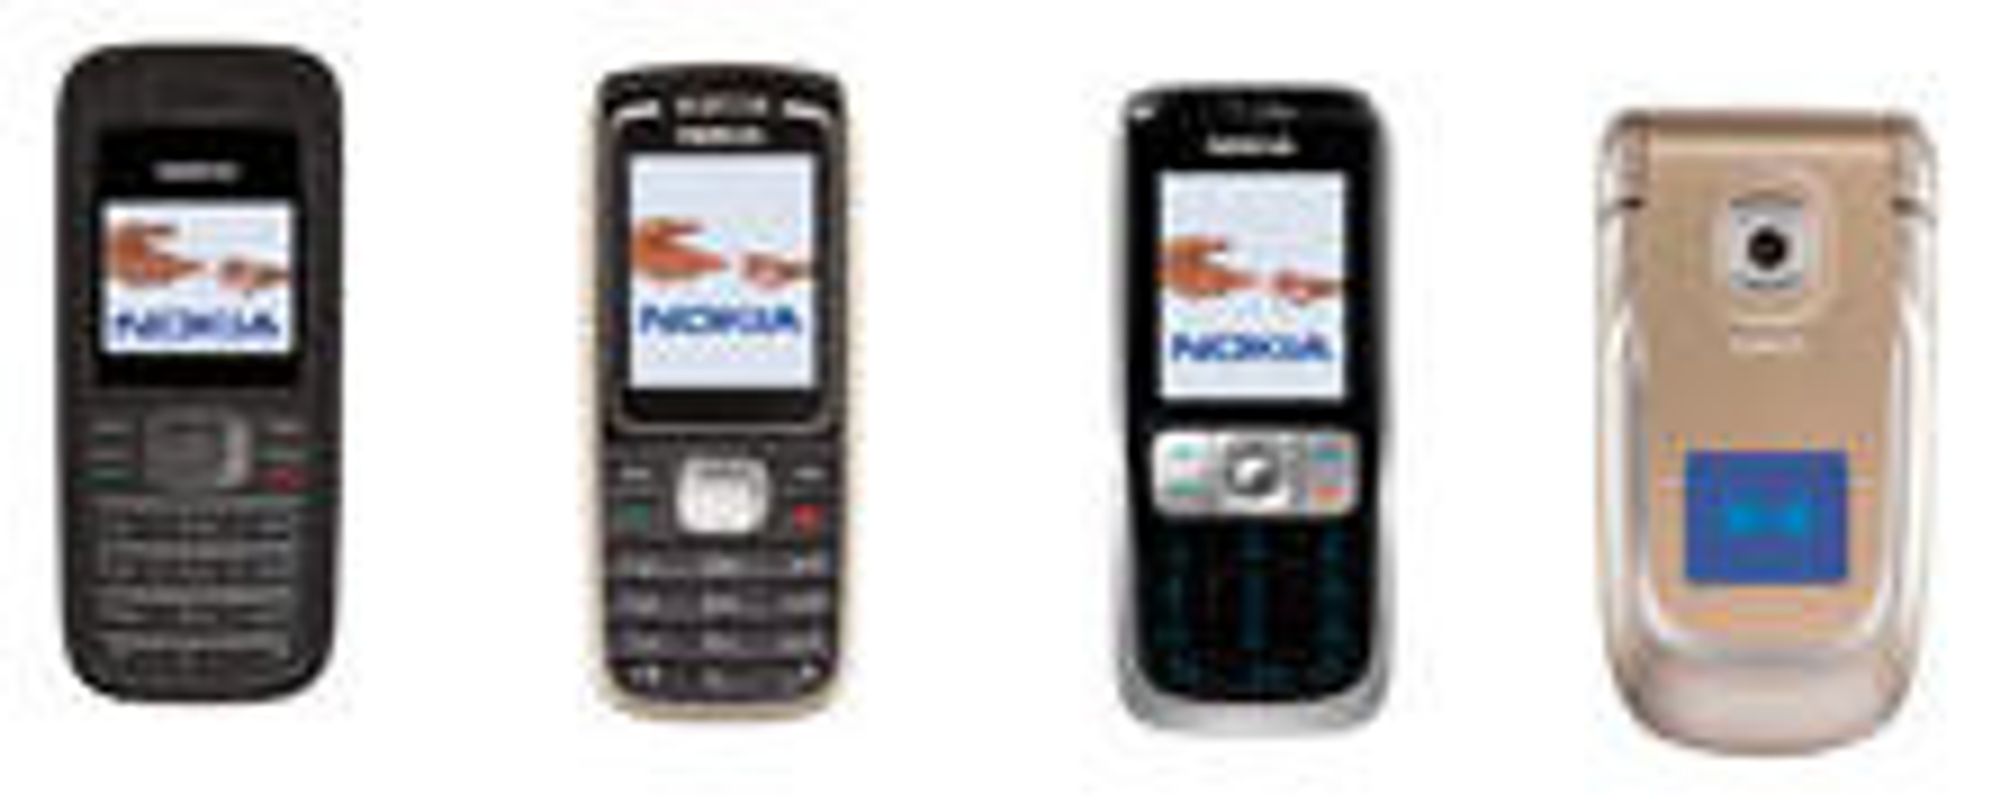 Flere av Nokias billigmodeller til Norge